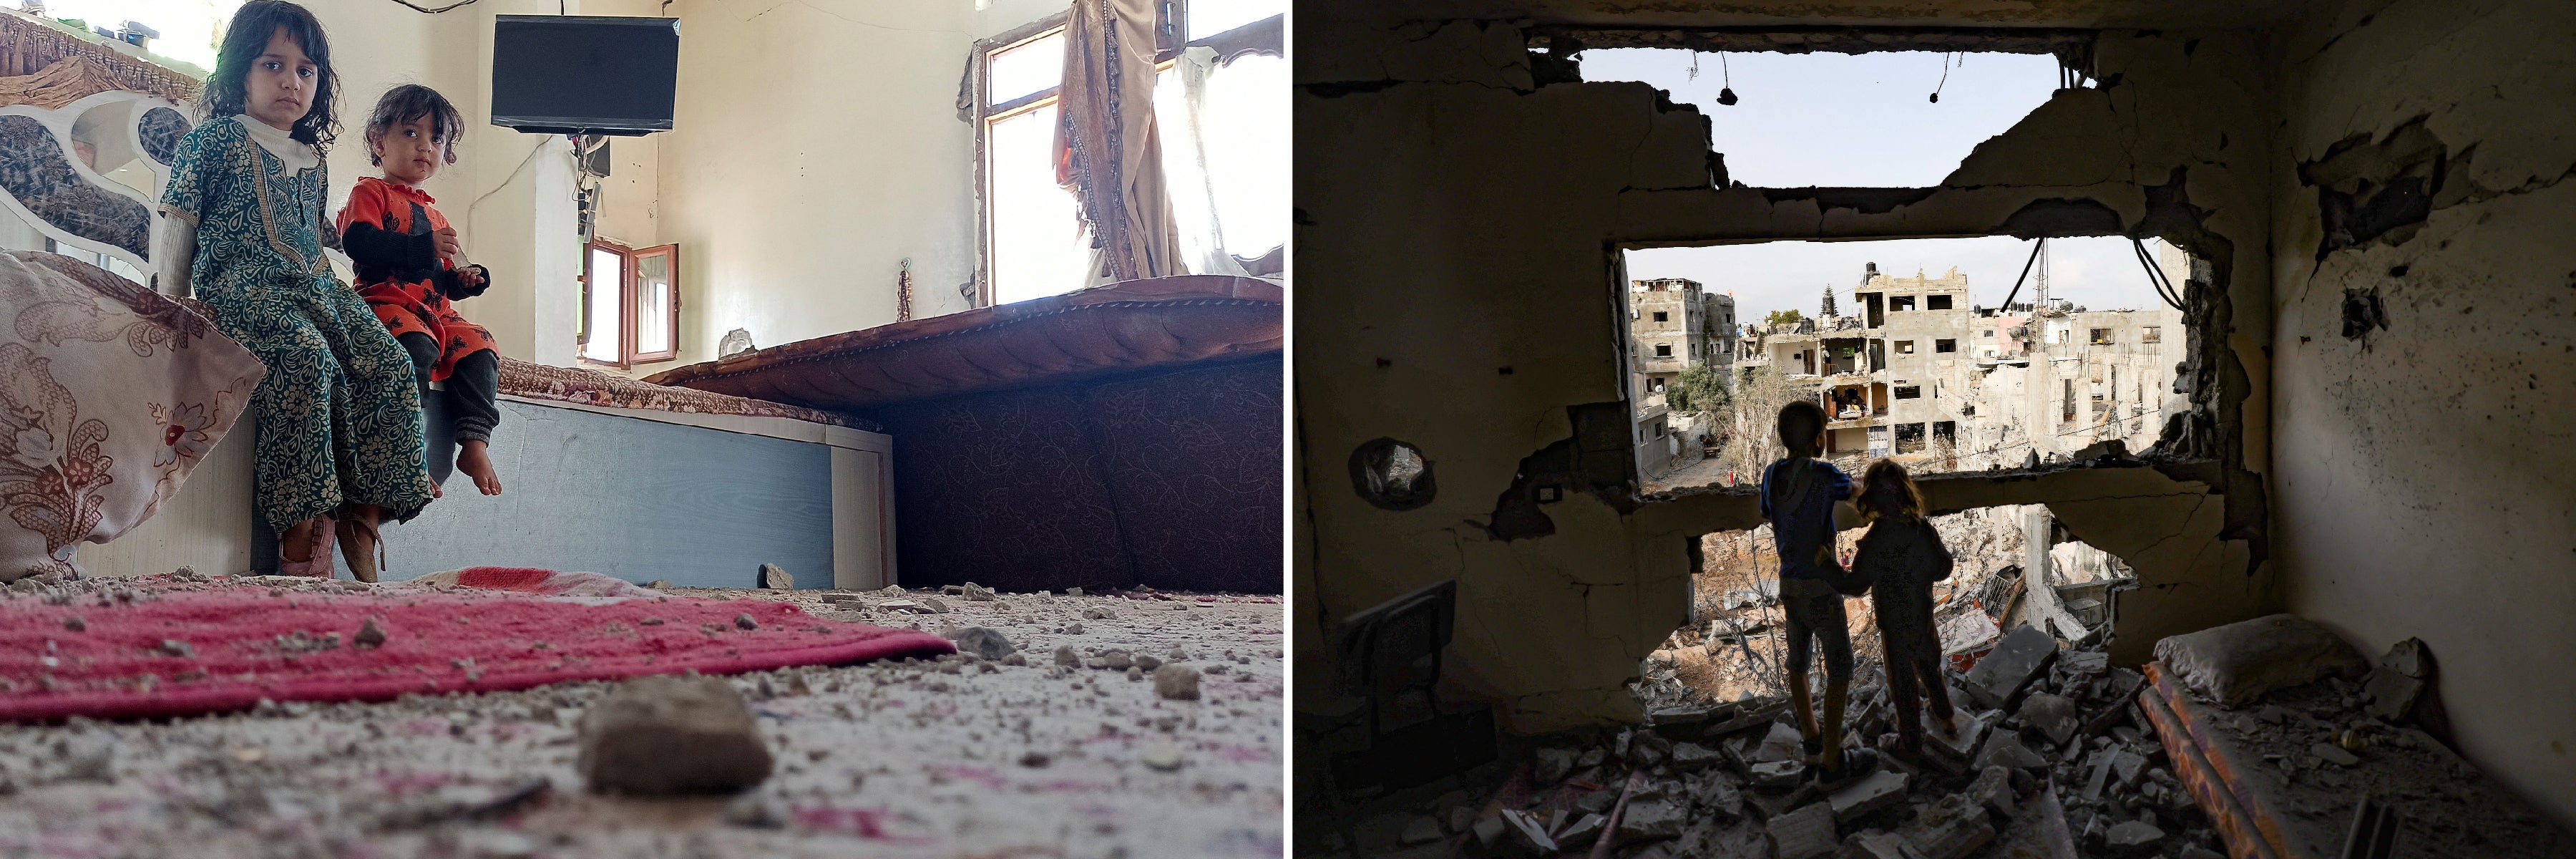 Meninas em um quarto de sua casa danificado por ataques aéreos liderados pela Arábia Saudita em um local militar próximo em Sanaa, Iêmen, em 19 de janeiro de 2022. Crianças palestinas que retornaram ao seu bairro observam os danos na casa, atingida por um ataque israelense na cidade de Gaza em 21 de maio de 2021.